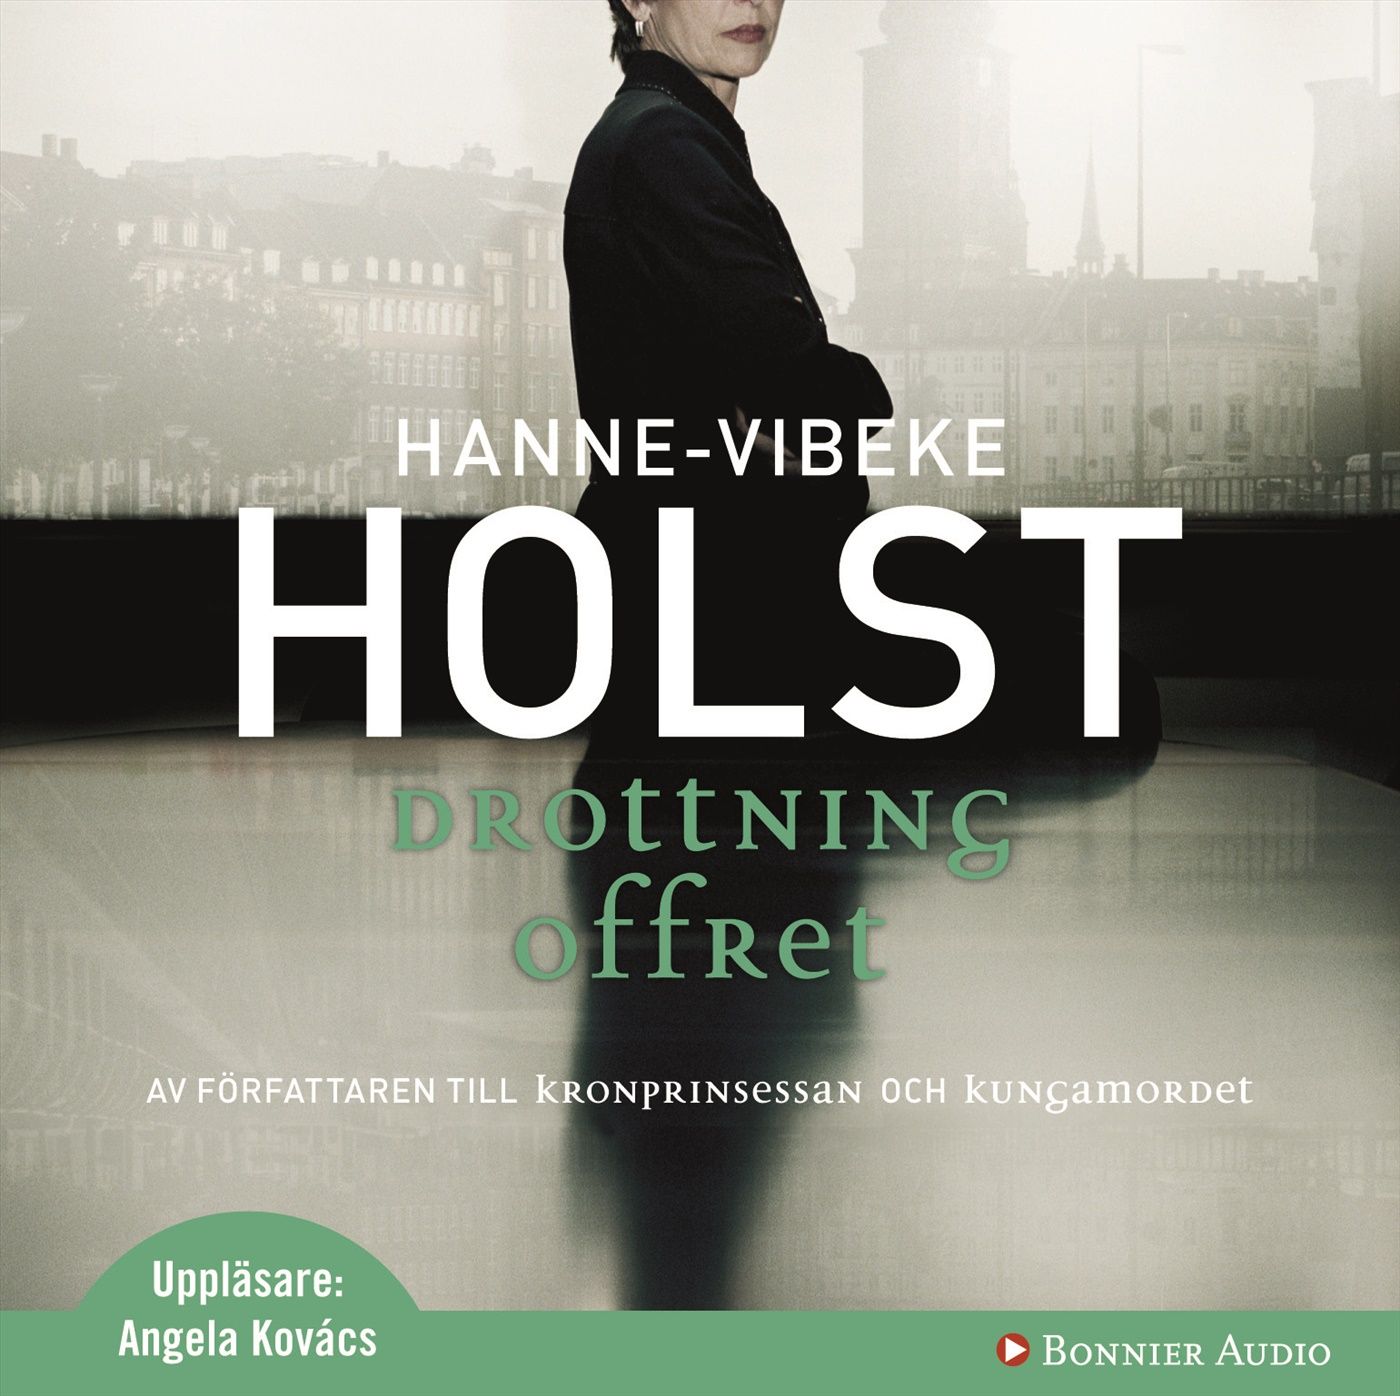 Drottningoffret, ljudbok av Hanne-Vibeke Holst